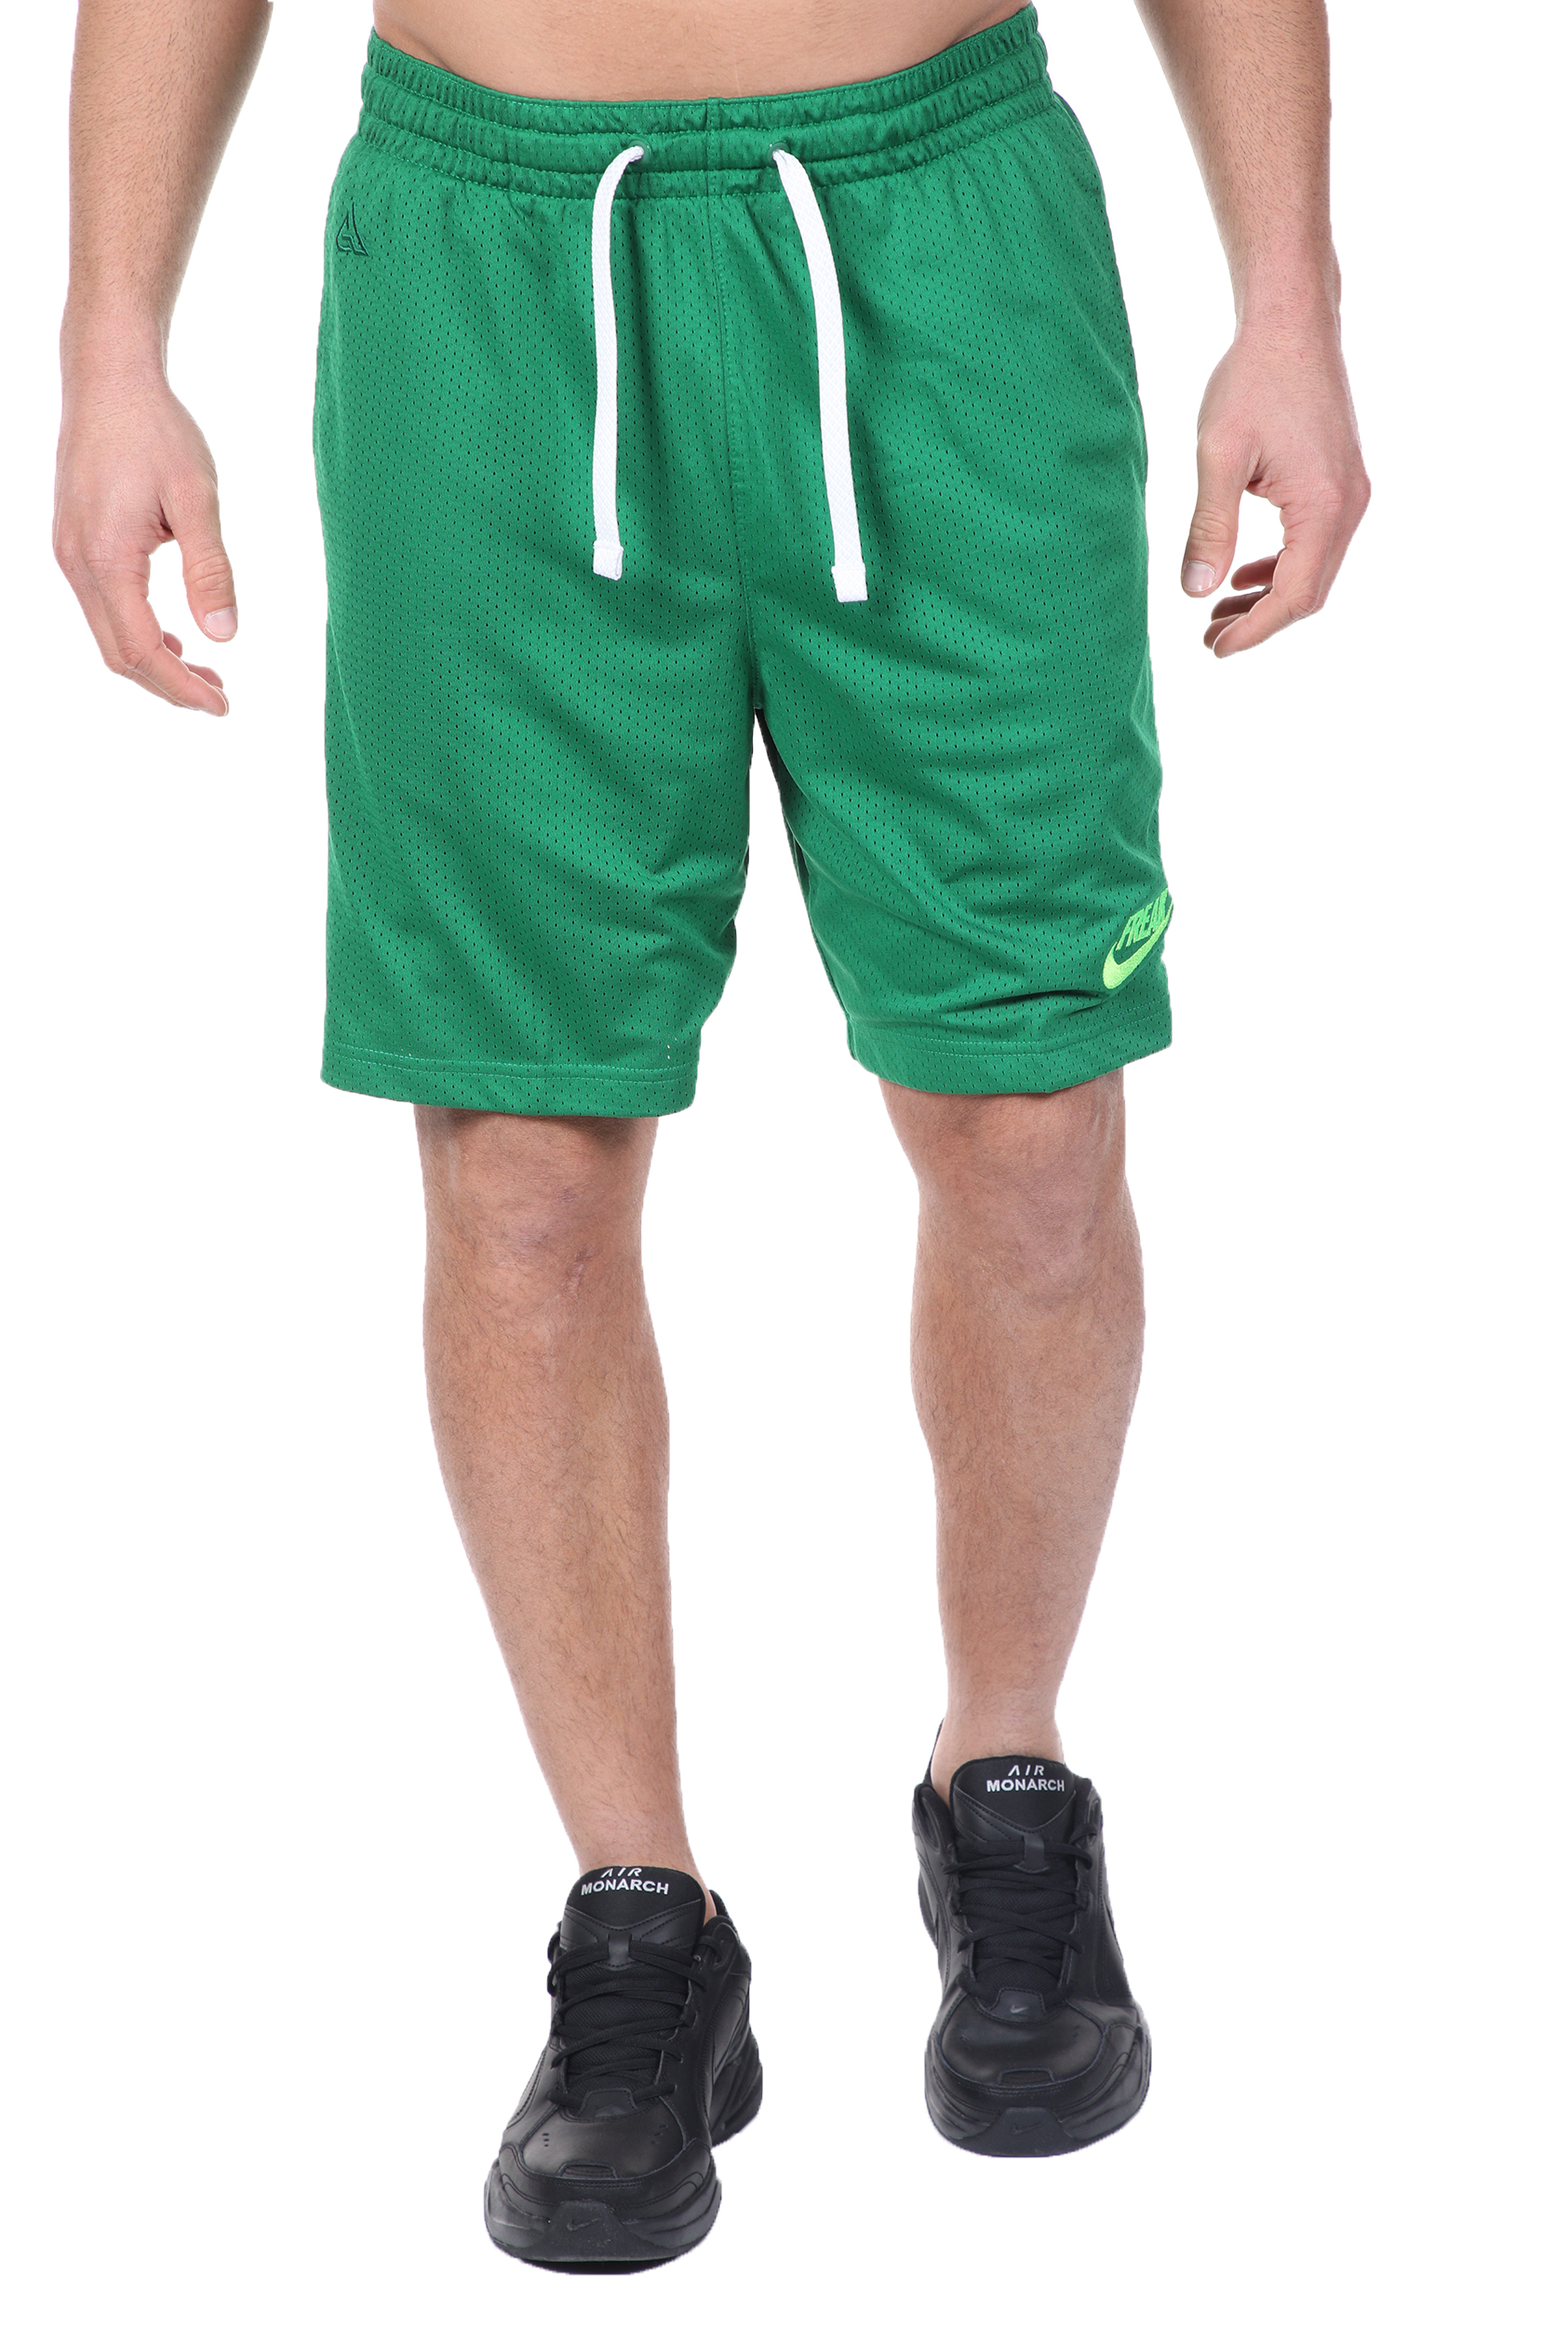 NIKE - Ανδρική βερμούδα basketball NIKE FREAK GIANNIS πράσινη